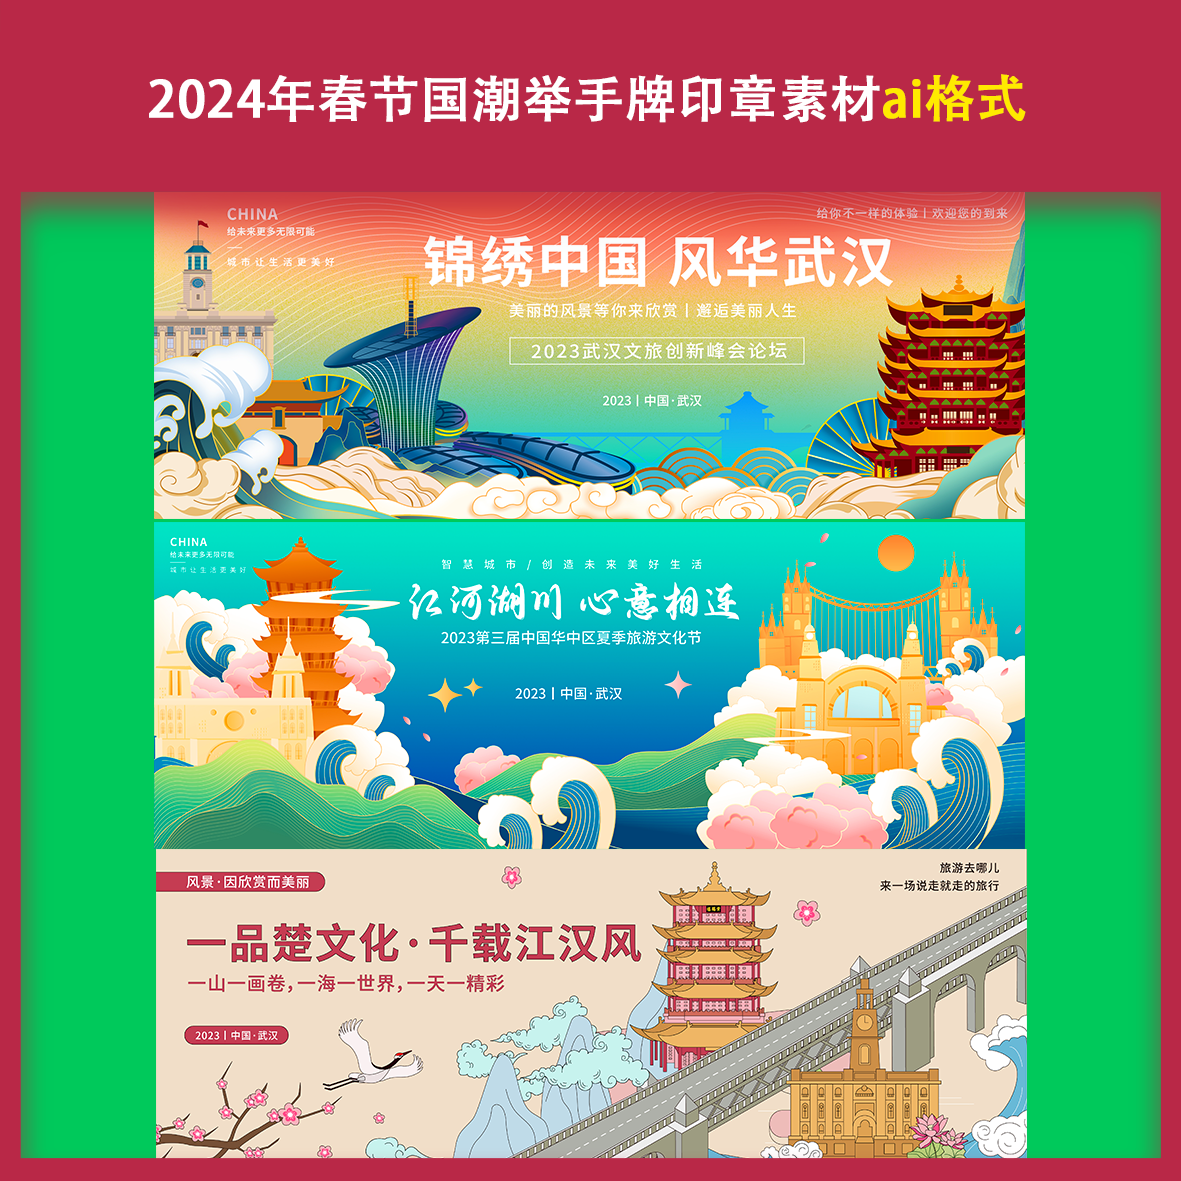 湖北武汉夏季旅游文化节背景板城市地标峰会建筑素材文件手绘景点